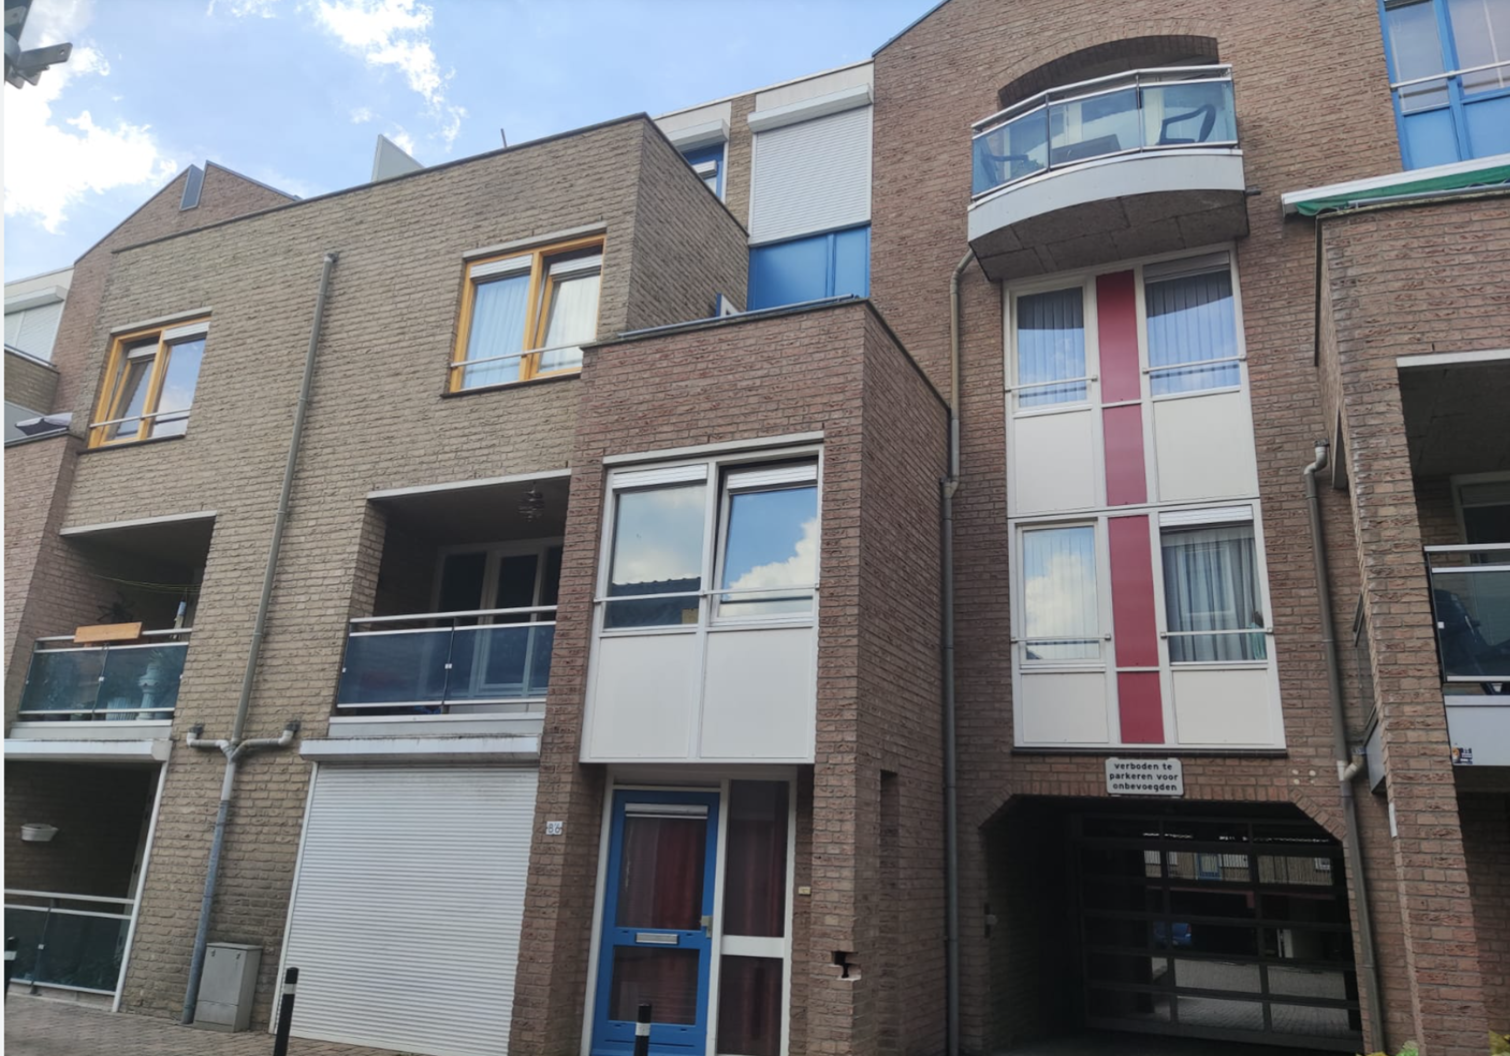 Henseniusstraat 56, 5801 AX Venray, Nederland